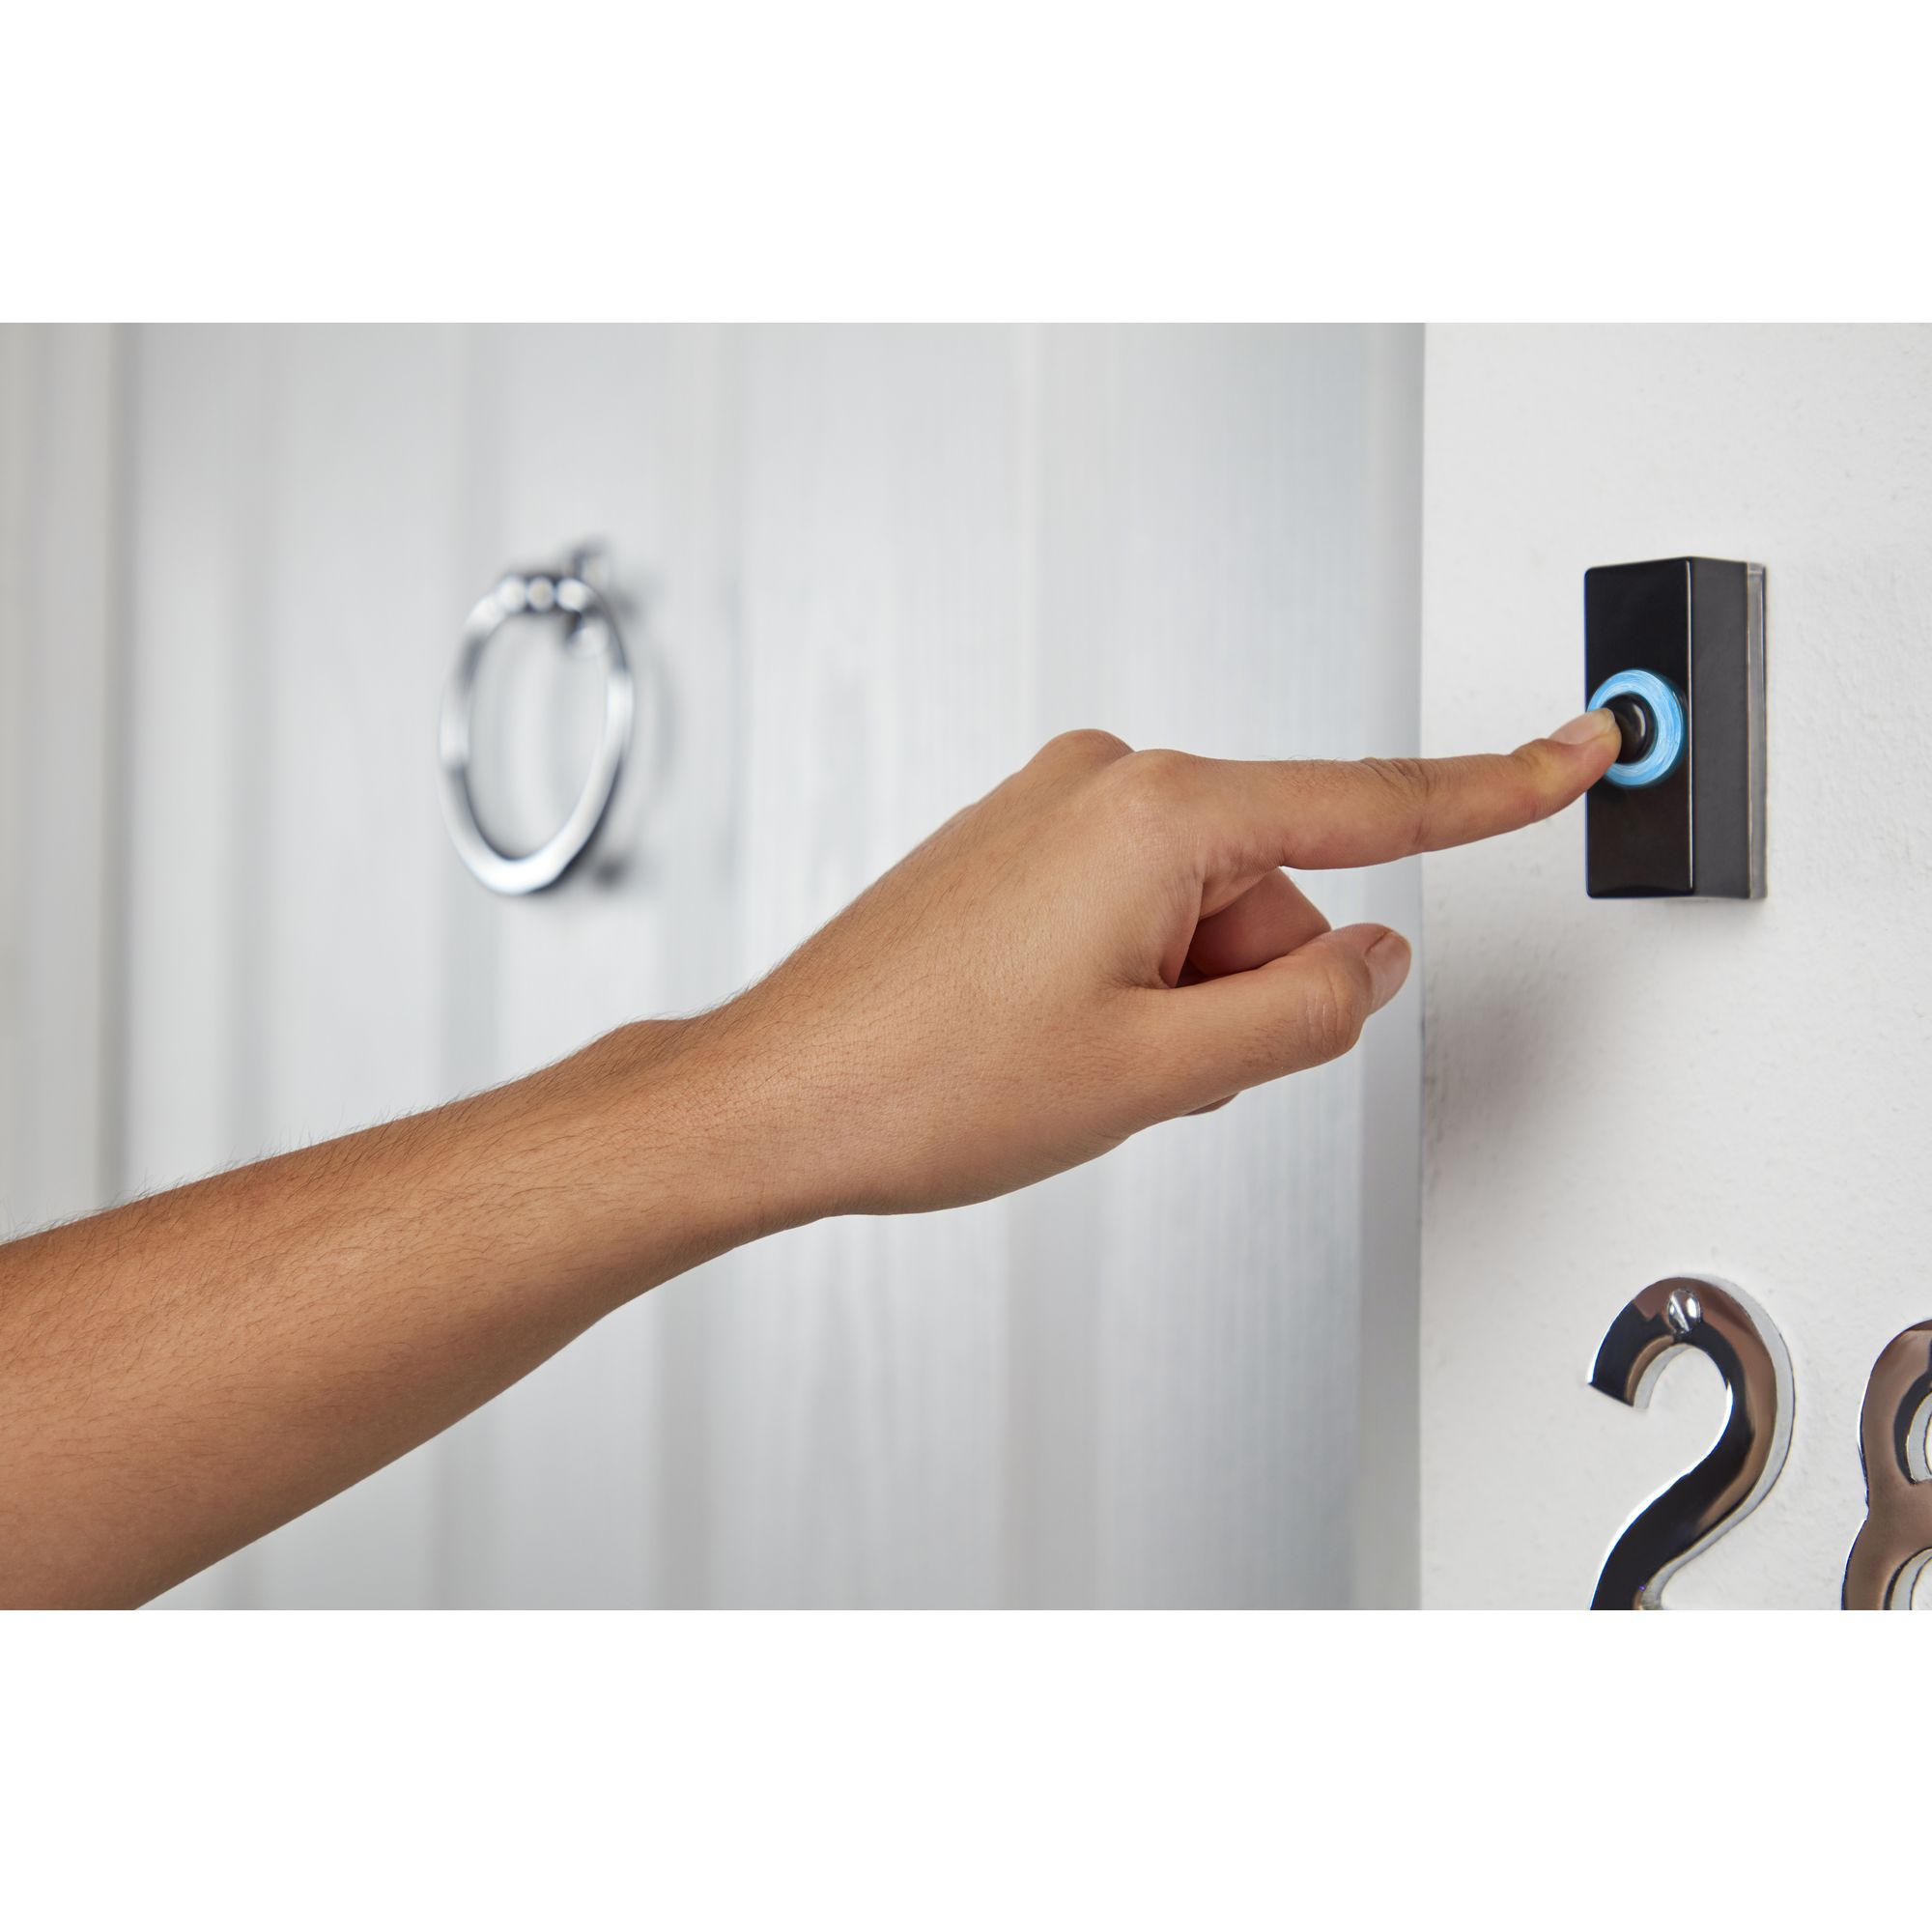 Ring Doorbell Sticker Video Security Camera Door Window Decal Outdoor Safe  3.75”